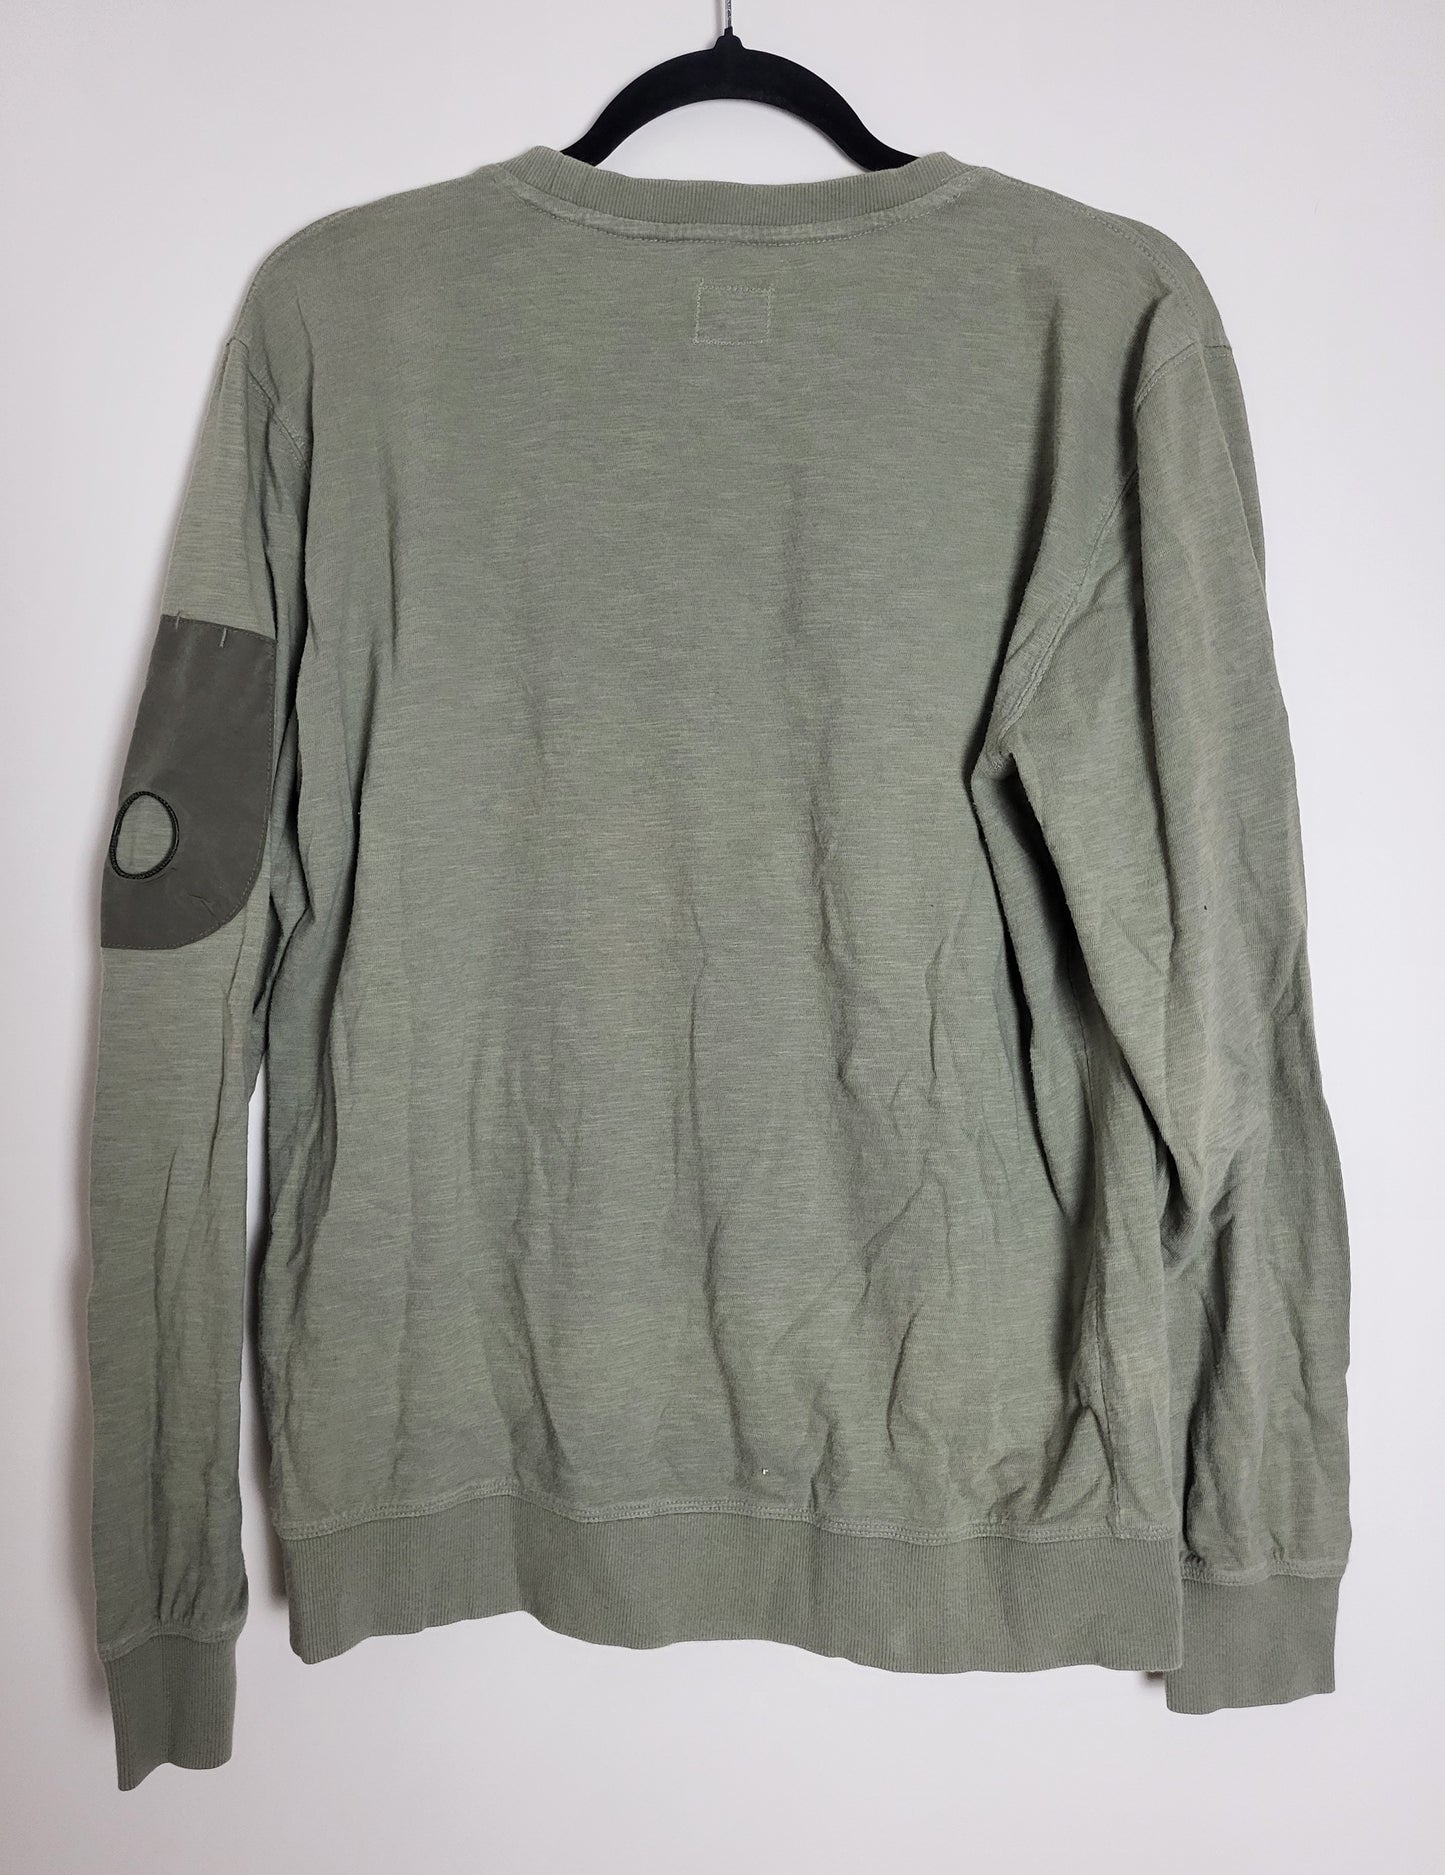 C.P. COMPANY - Vintage Pullover - Klassisch mit Tasche - Oliv - Herren - L